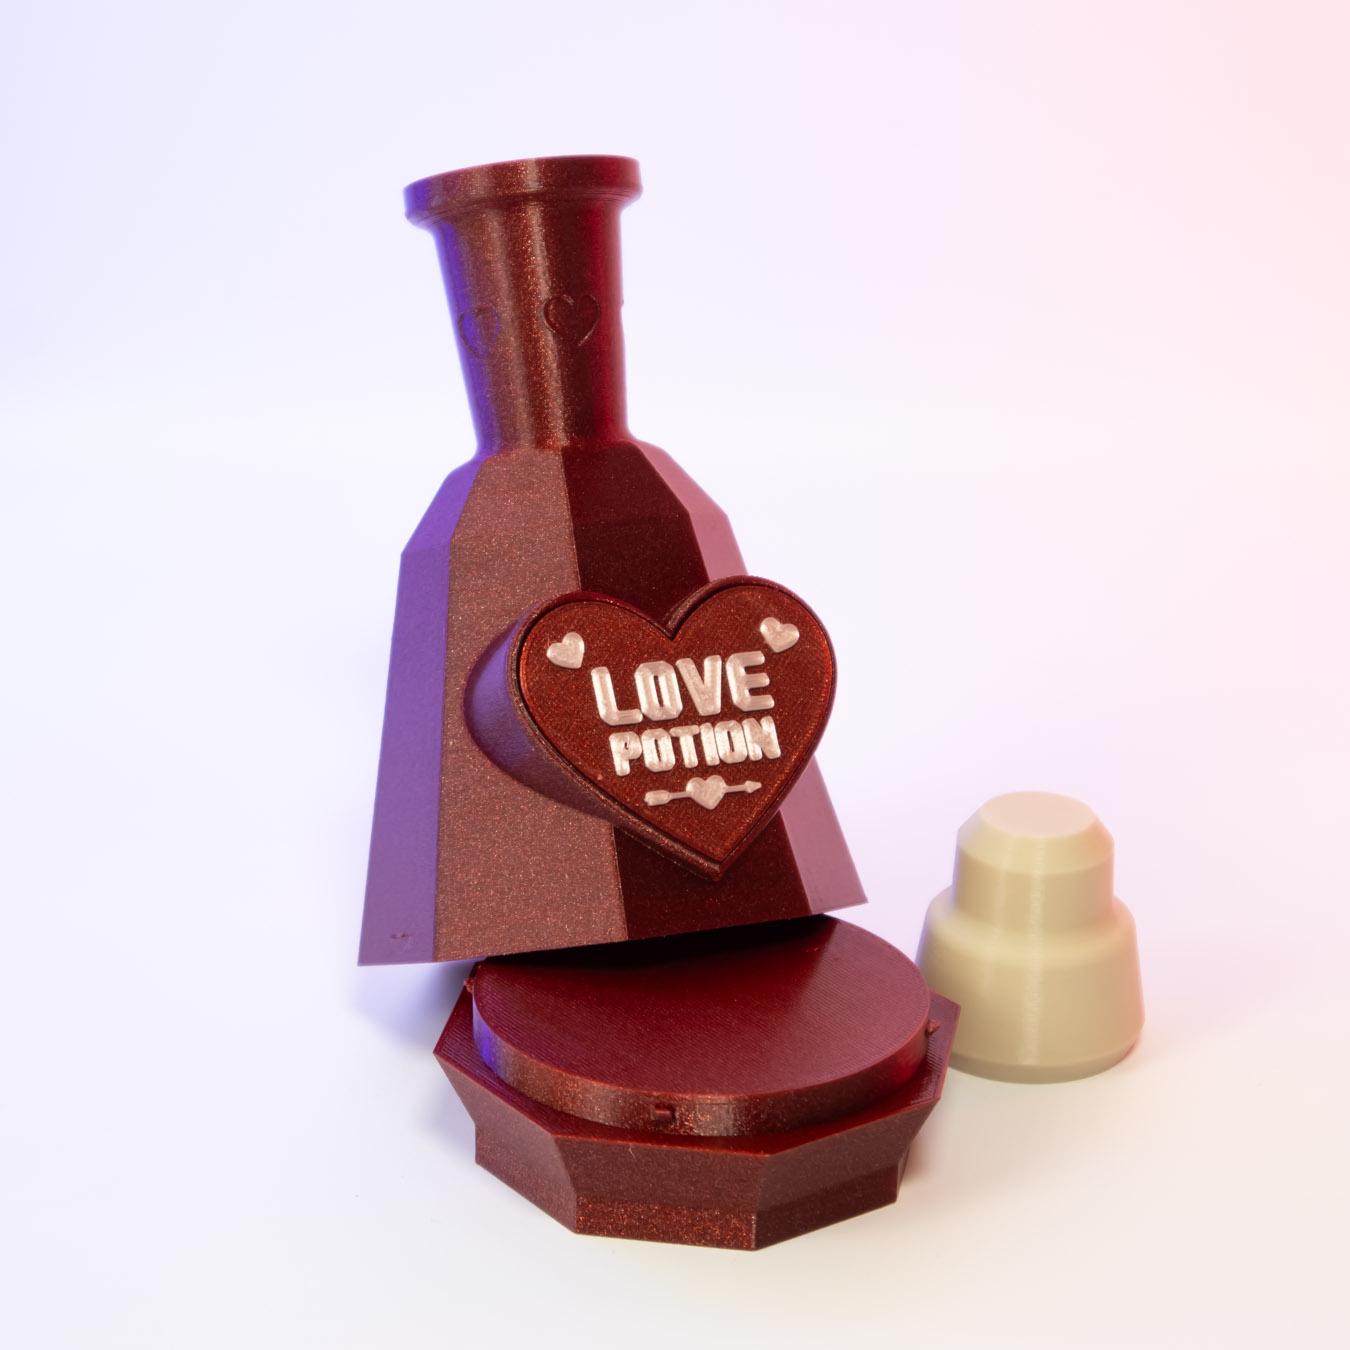 Love Potion Bottle - secret stash container 3d model